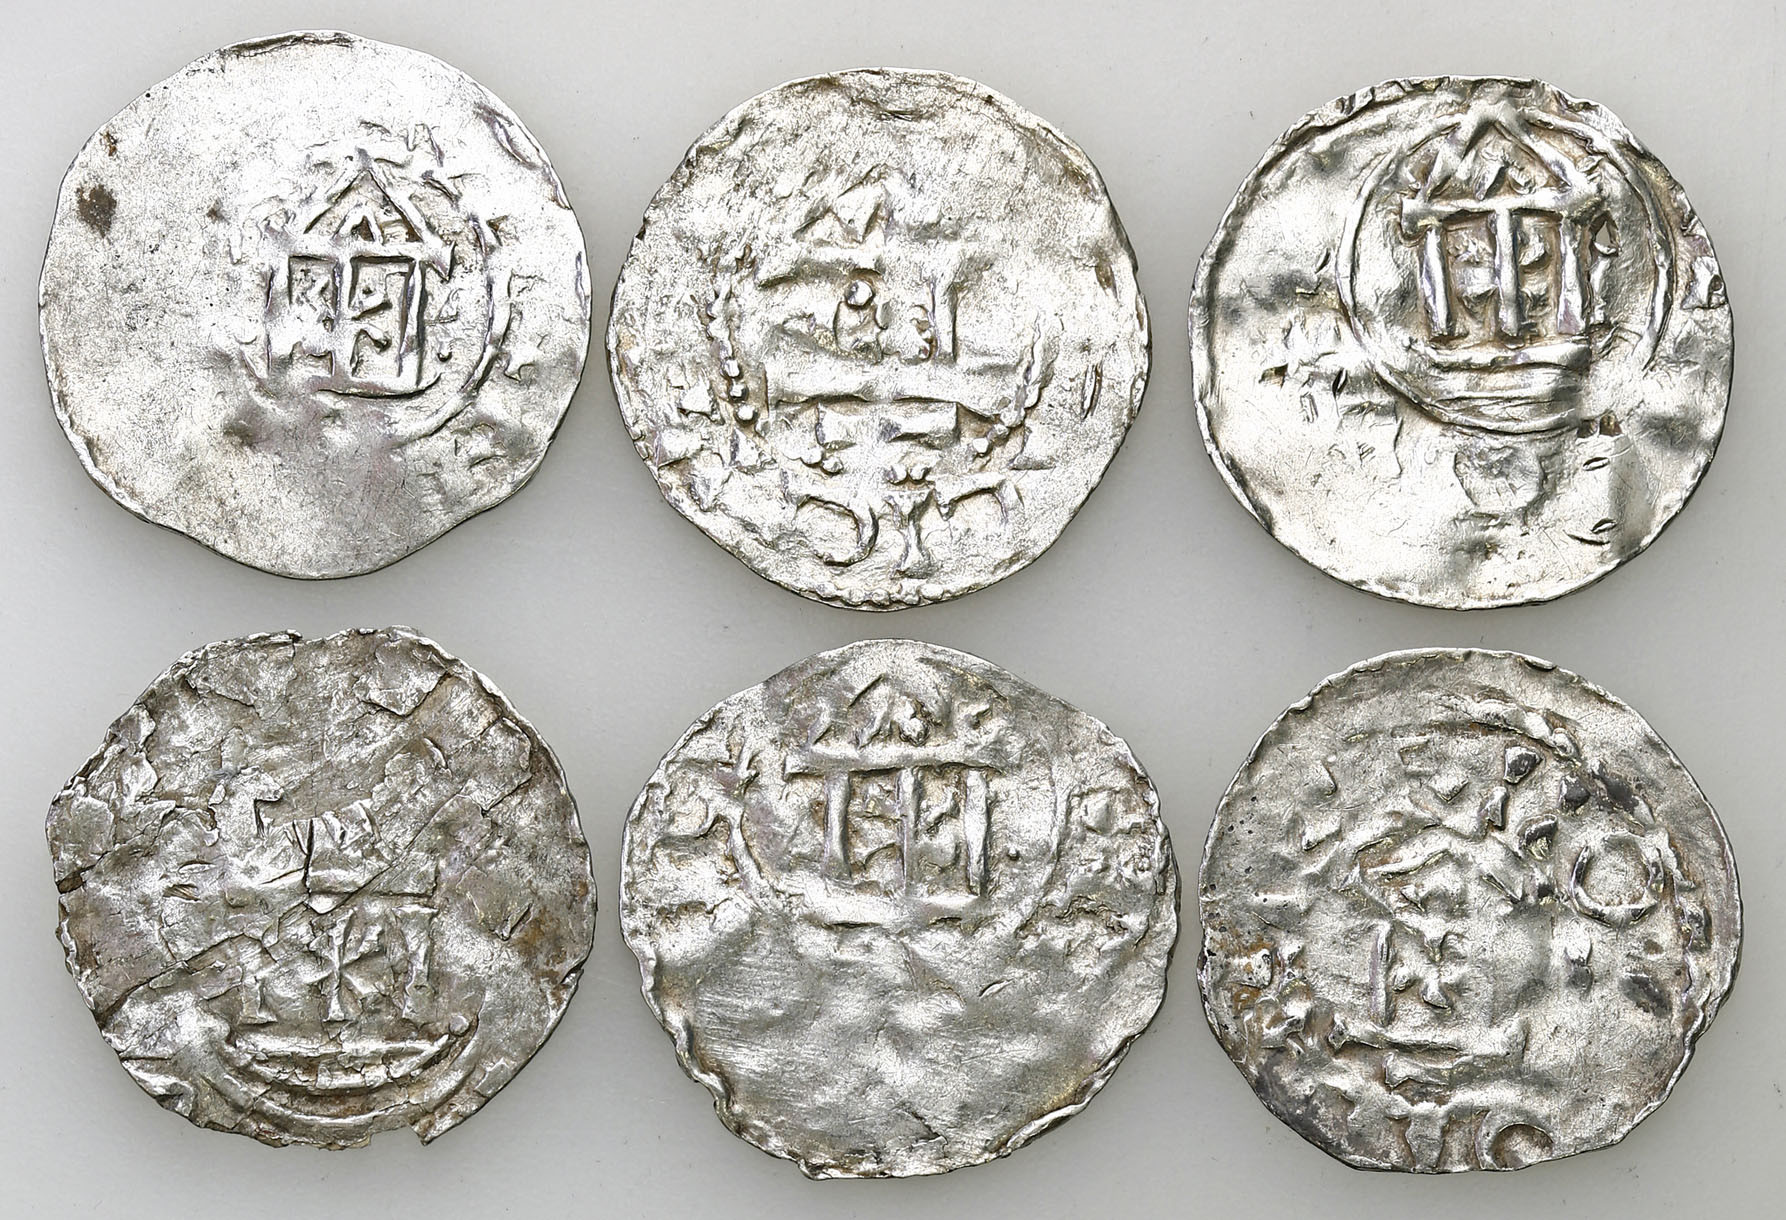 Niemcy, Frankonia - Moguncja. Denar, zestaw 6 monet